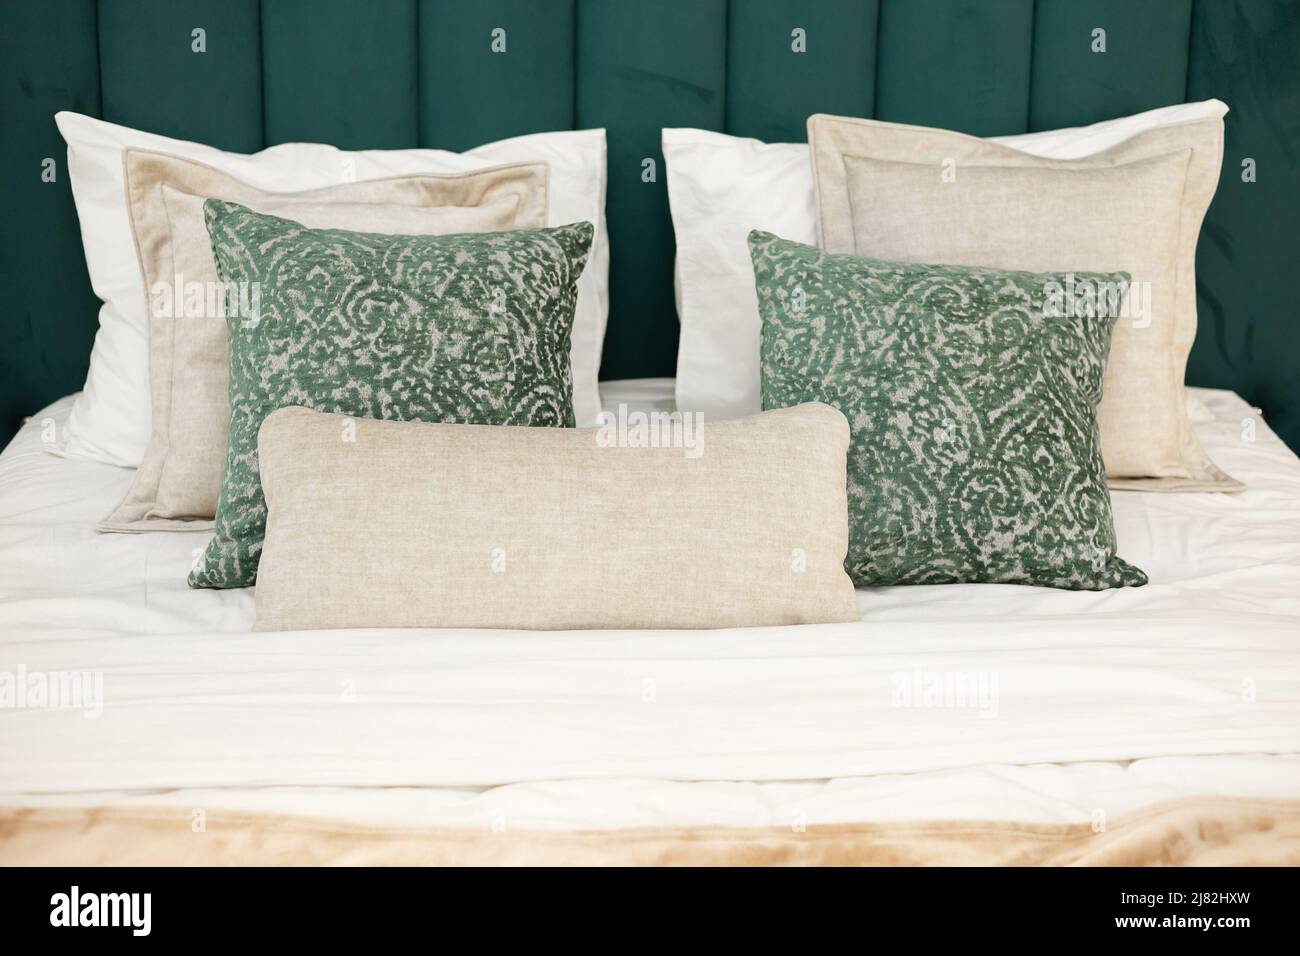 Lit avec tête de lit en velours vert doux et oreillers dans les tons de beige et de vert avec un motif. Gros plan Banque D'Images